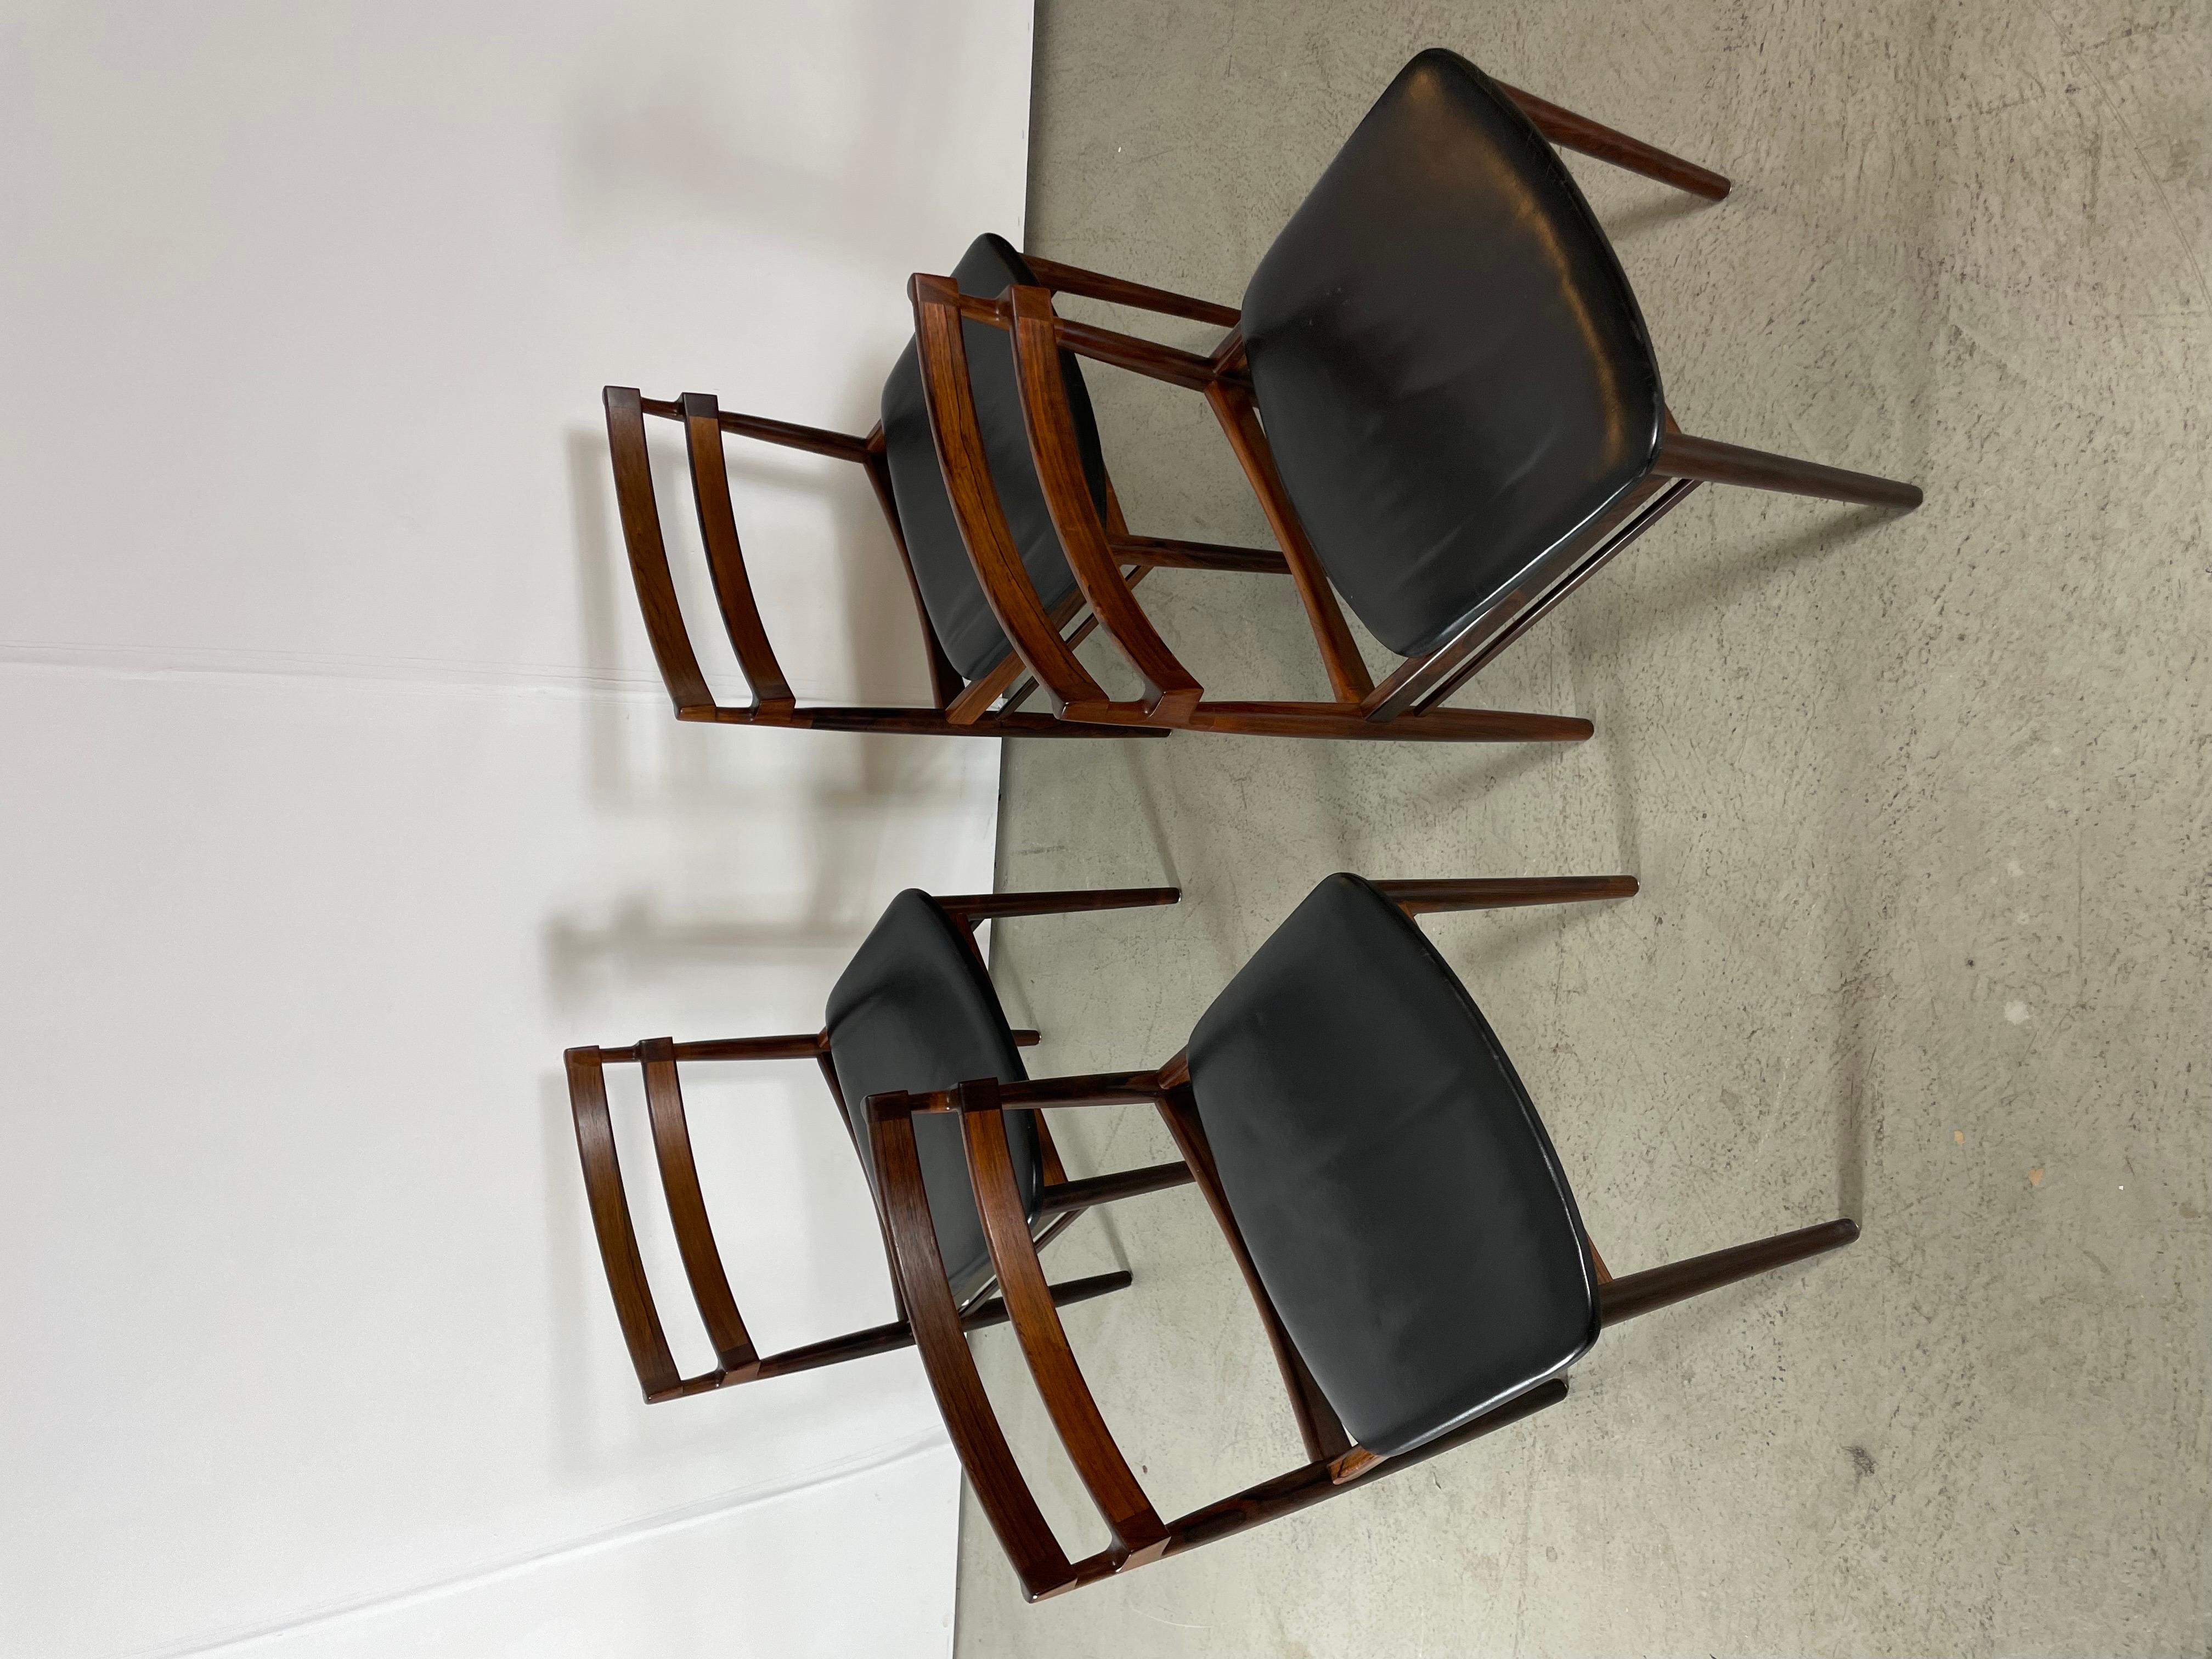 Un ensemble absolument rare et étonnant de 4 chaises de salle à manger en palissandre de Rio, conçu par Henry Rosengren. Fabriqué au Danemark par Brande Møbelindustri dans les années 1950. Ils présentent un cadre en bois massif en palissandre de Rio